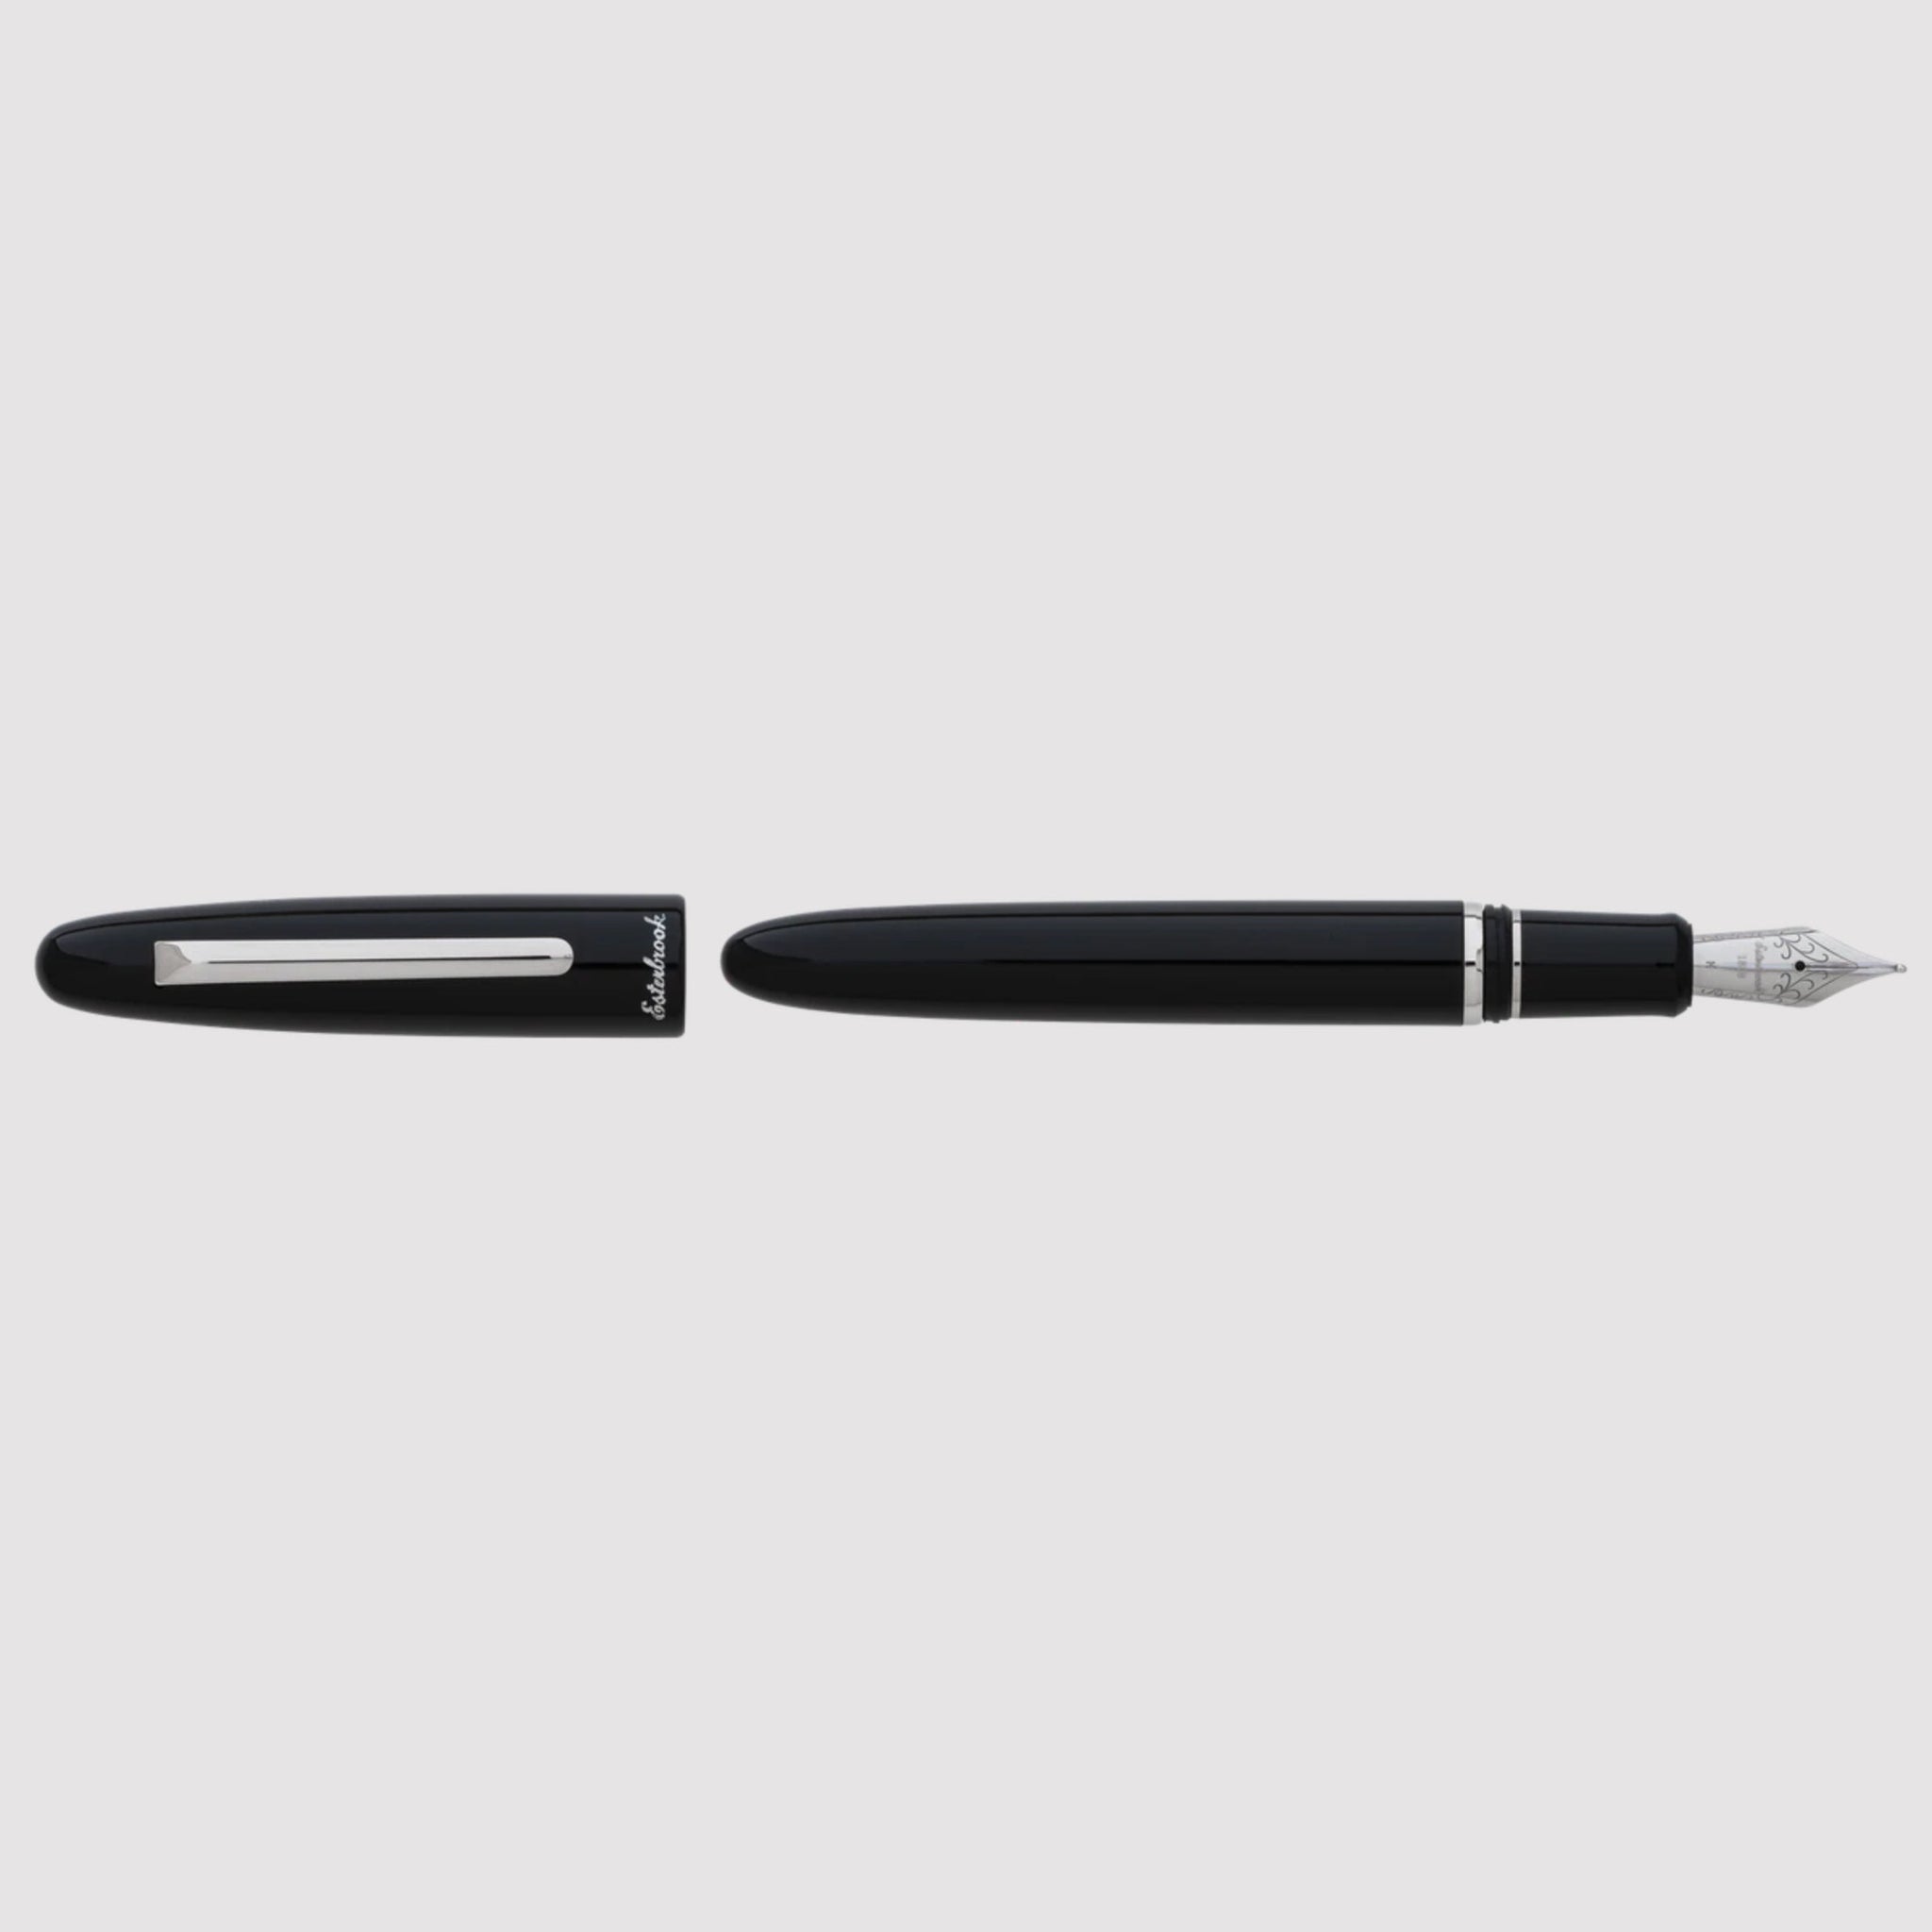 Esterbrook - Fountain Pen Estie Ebony Black (Oversized)